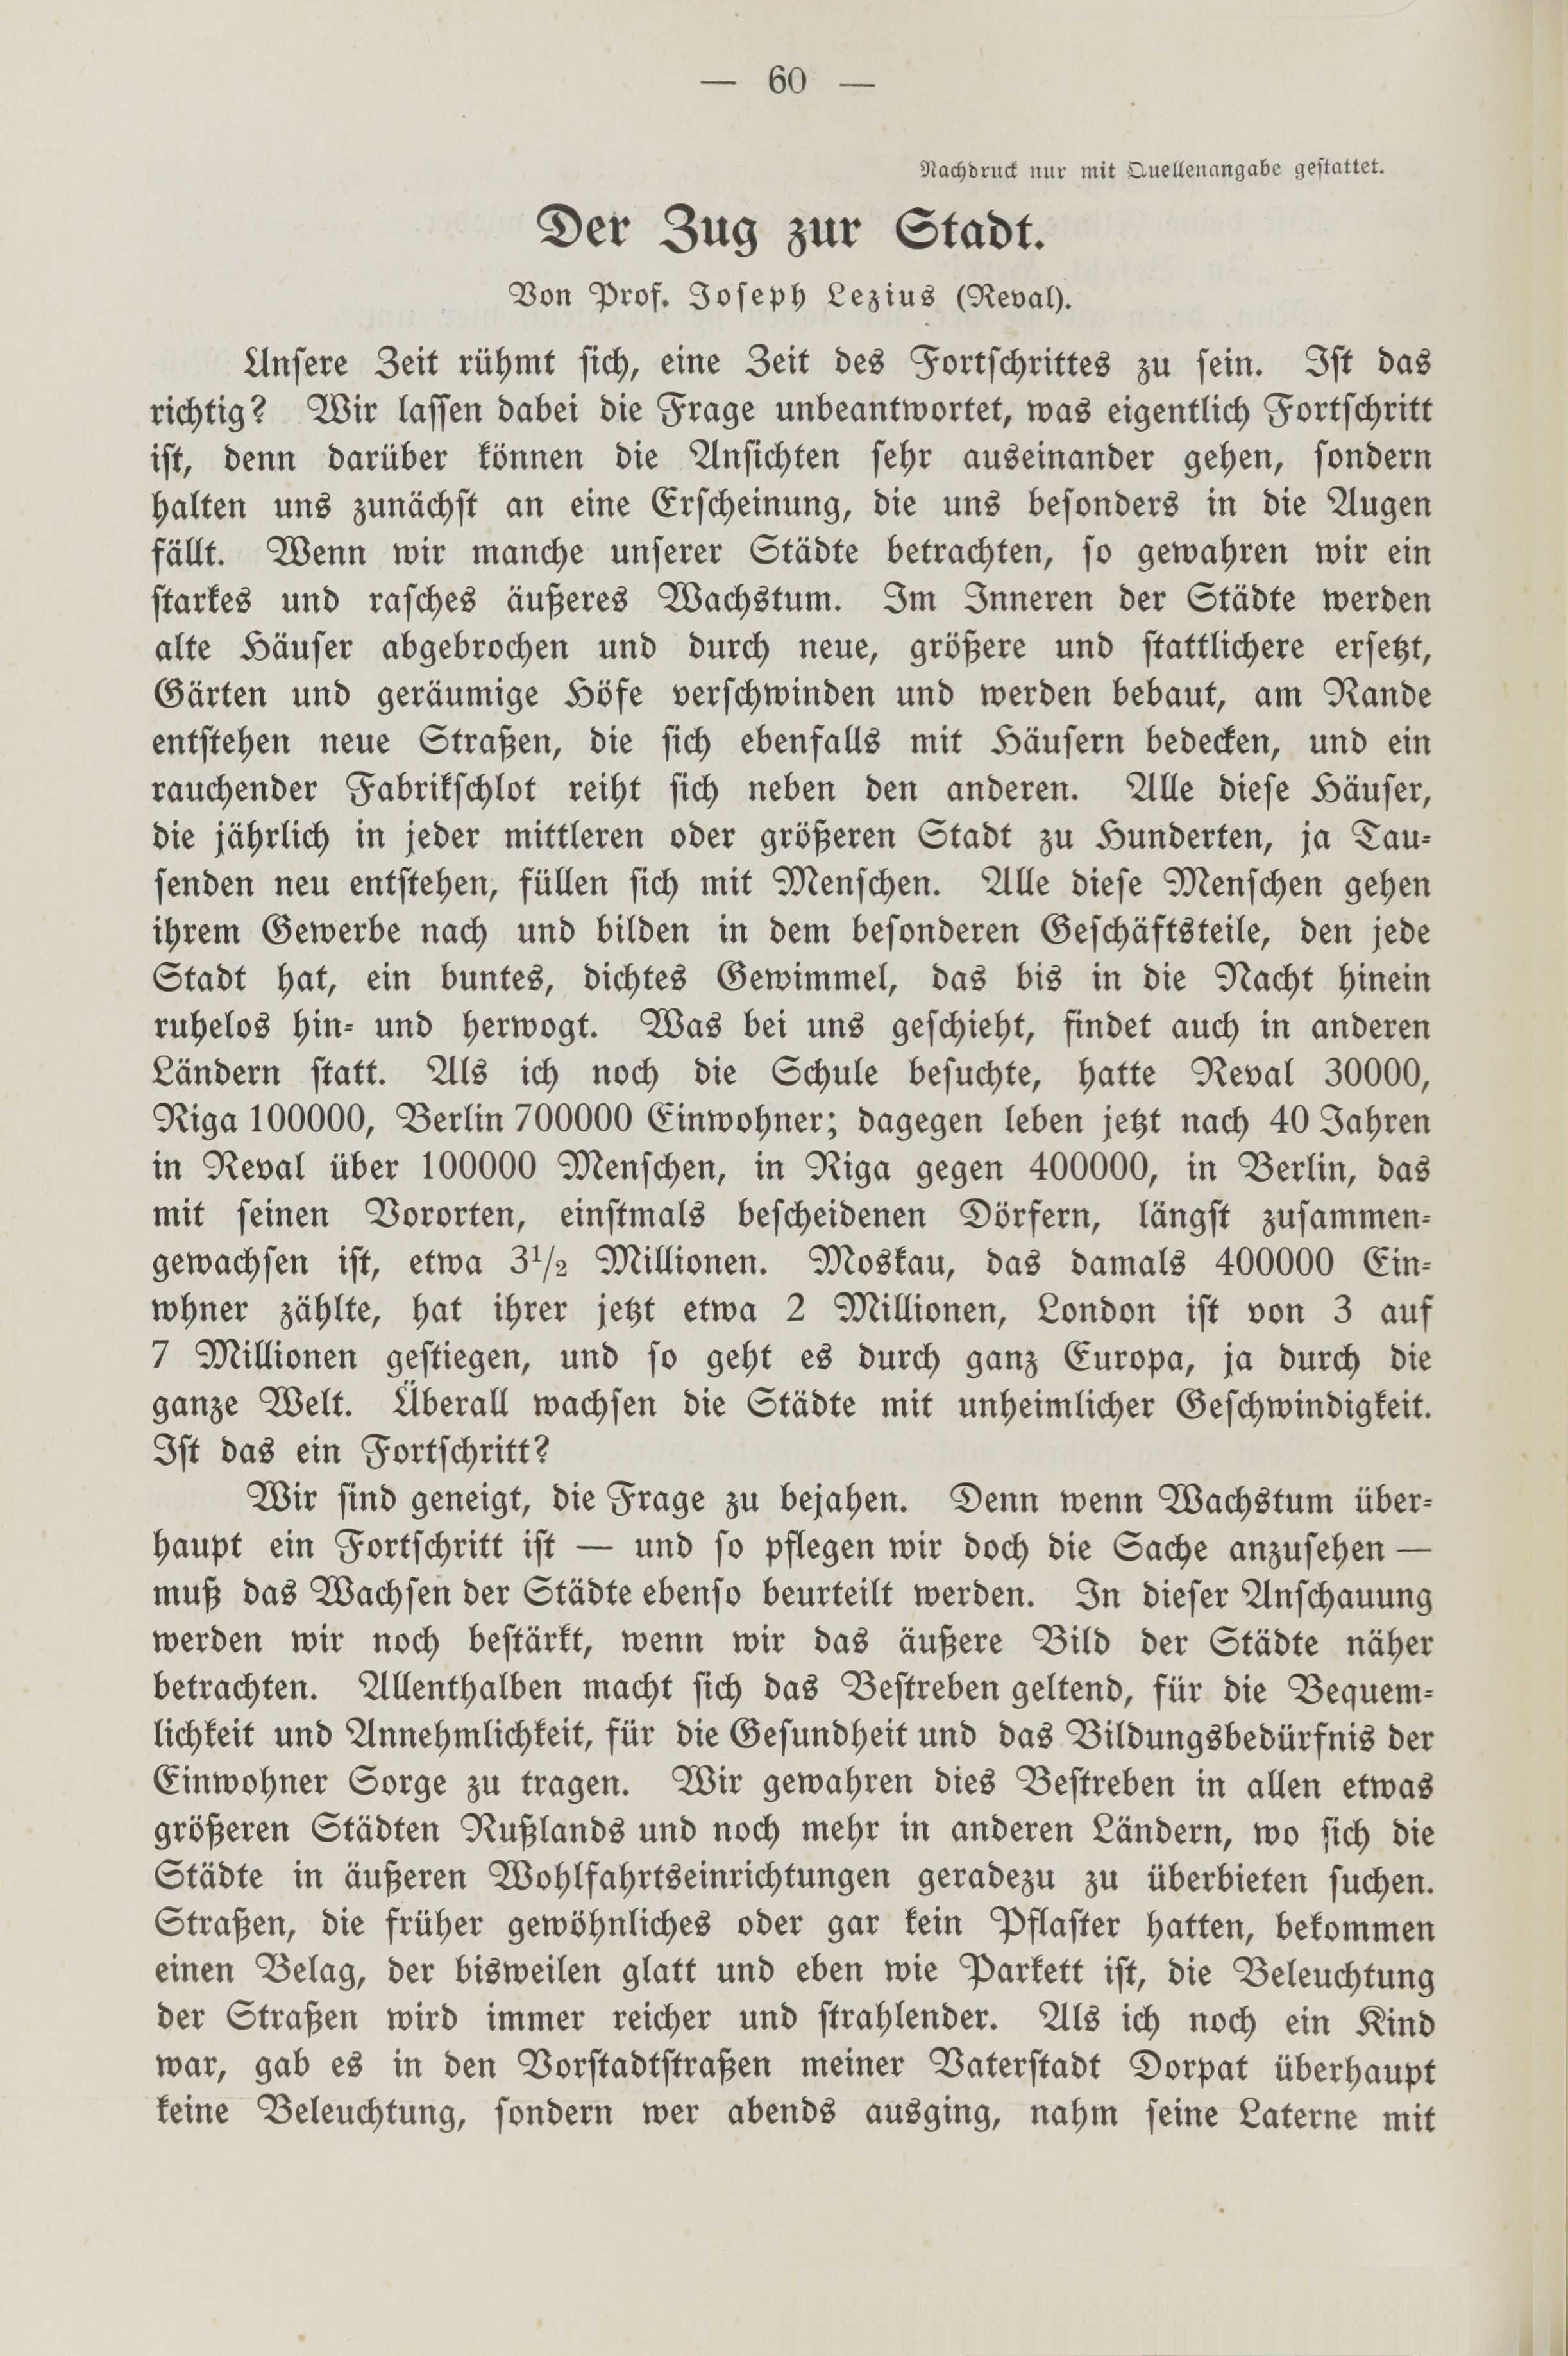 Deutsche Monatsschrift für Russland [2] (1913) | 64. (60) Põhitekst